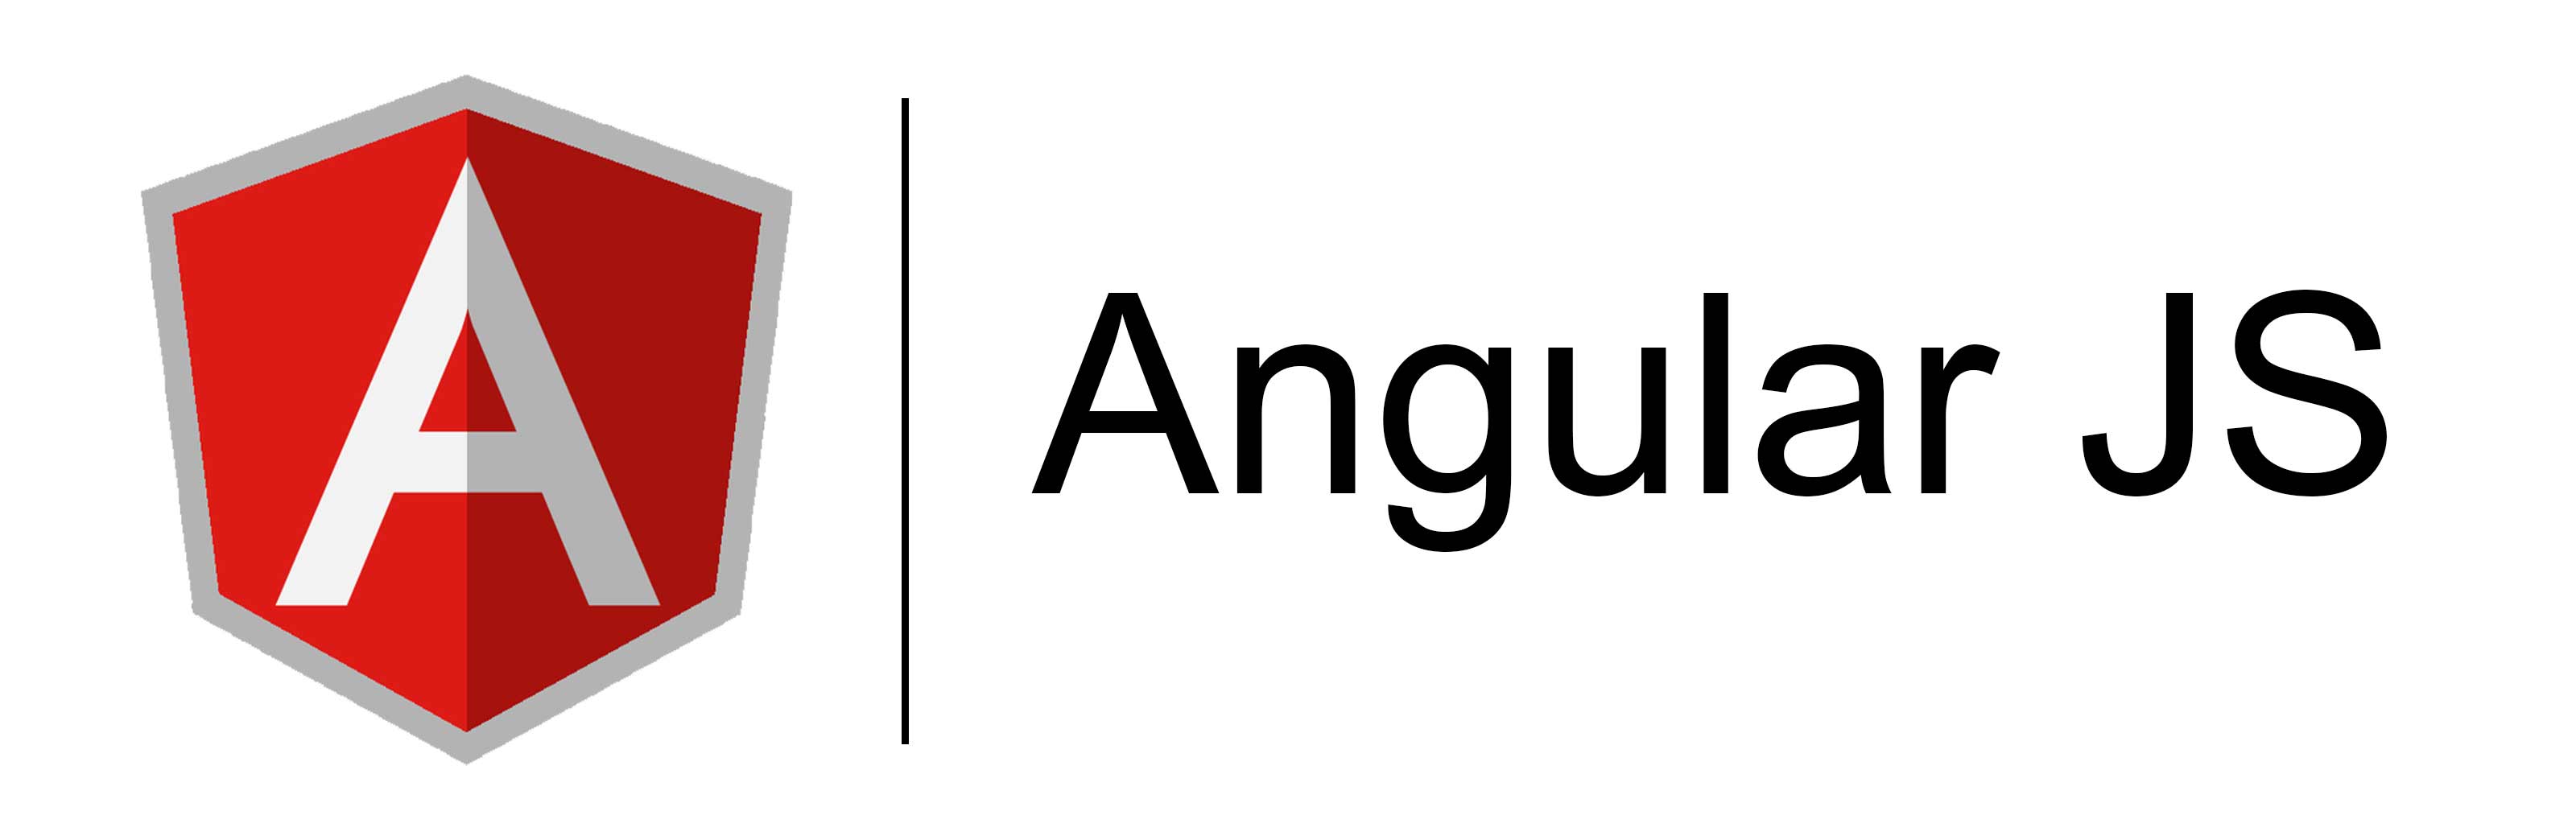 Angular.js mehregan